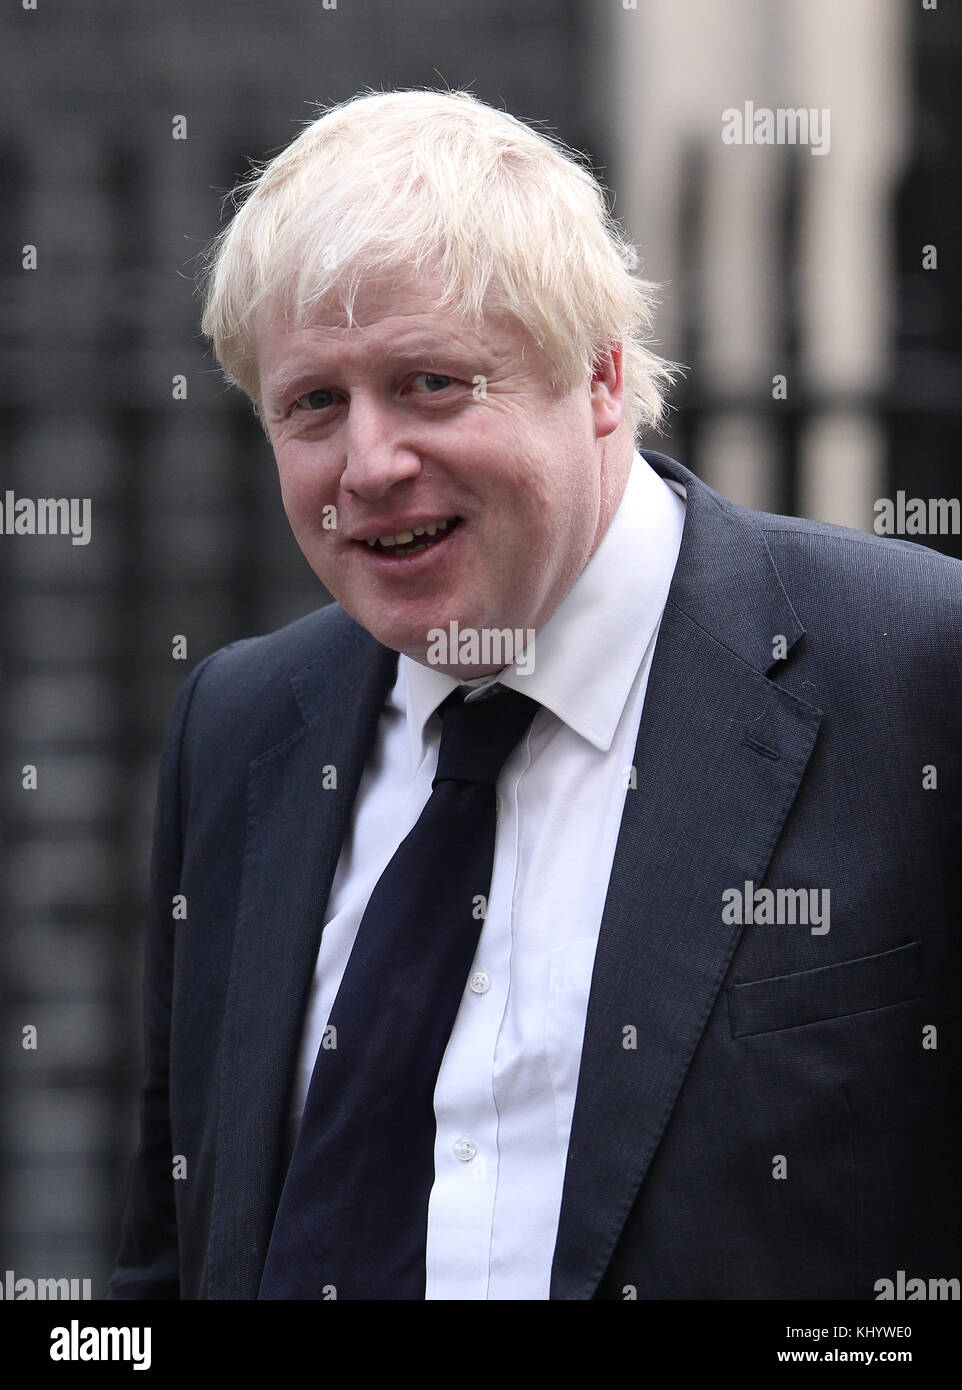 Londres, Royaume-Uni. 22 novembre, 2017. Boris Johnson, secrétaire d'État aux affaires étrangères vu à Downing Street à Londres credit : rm press/Alamy live news Banque D'Images